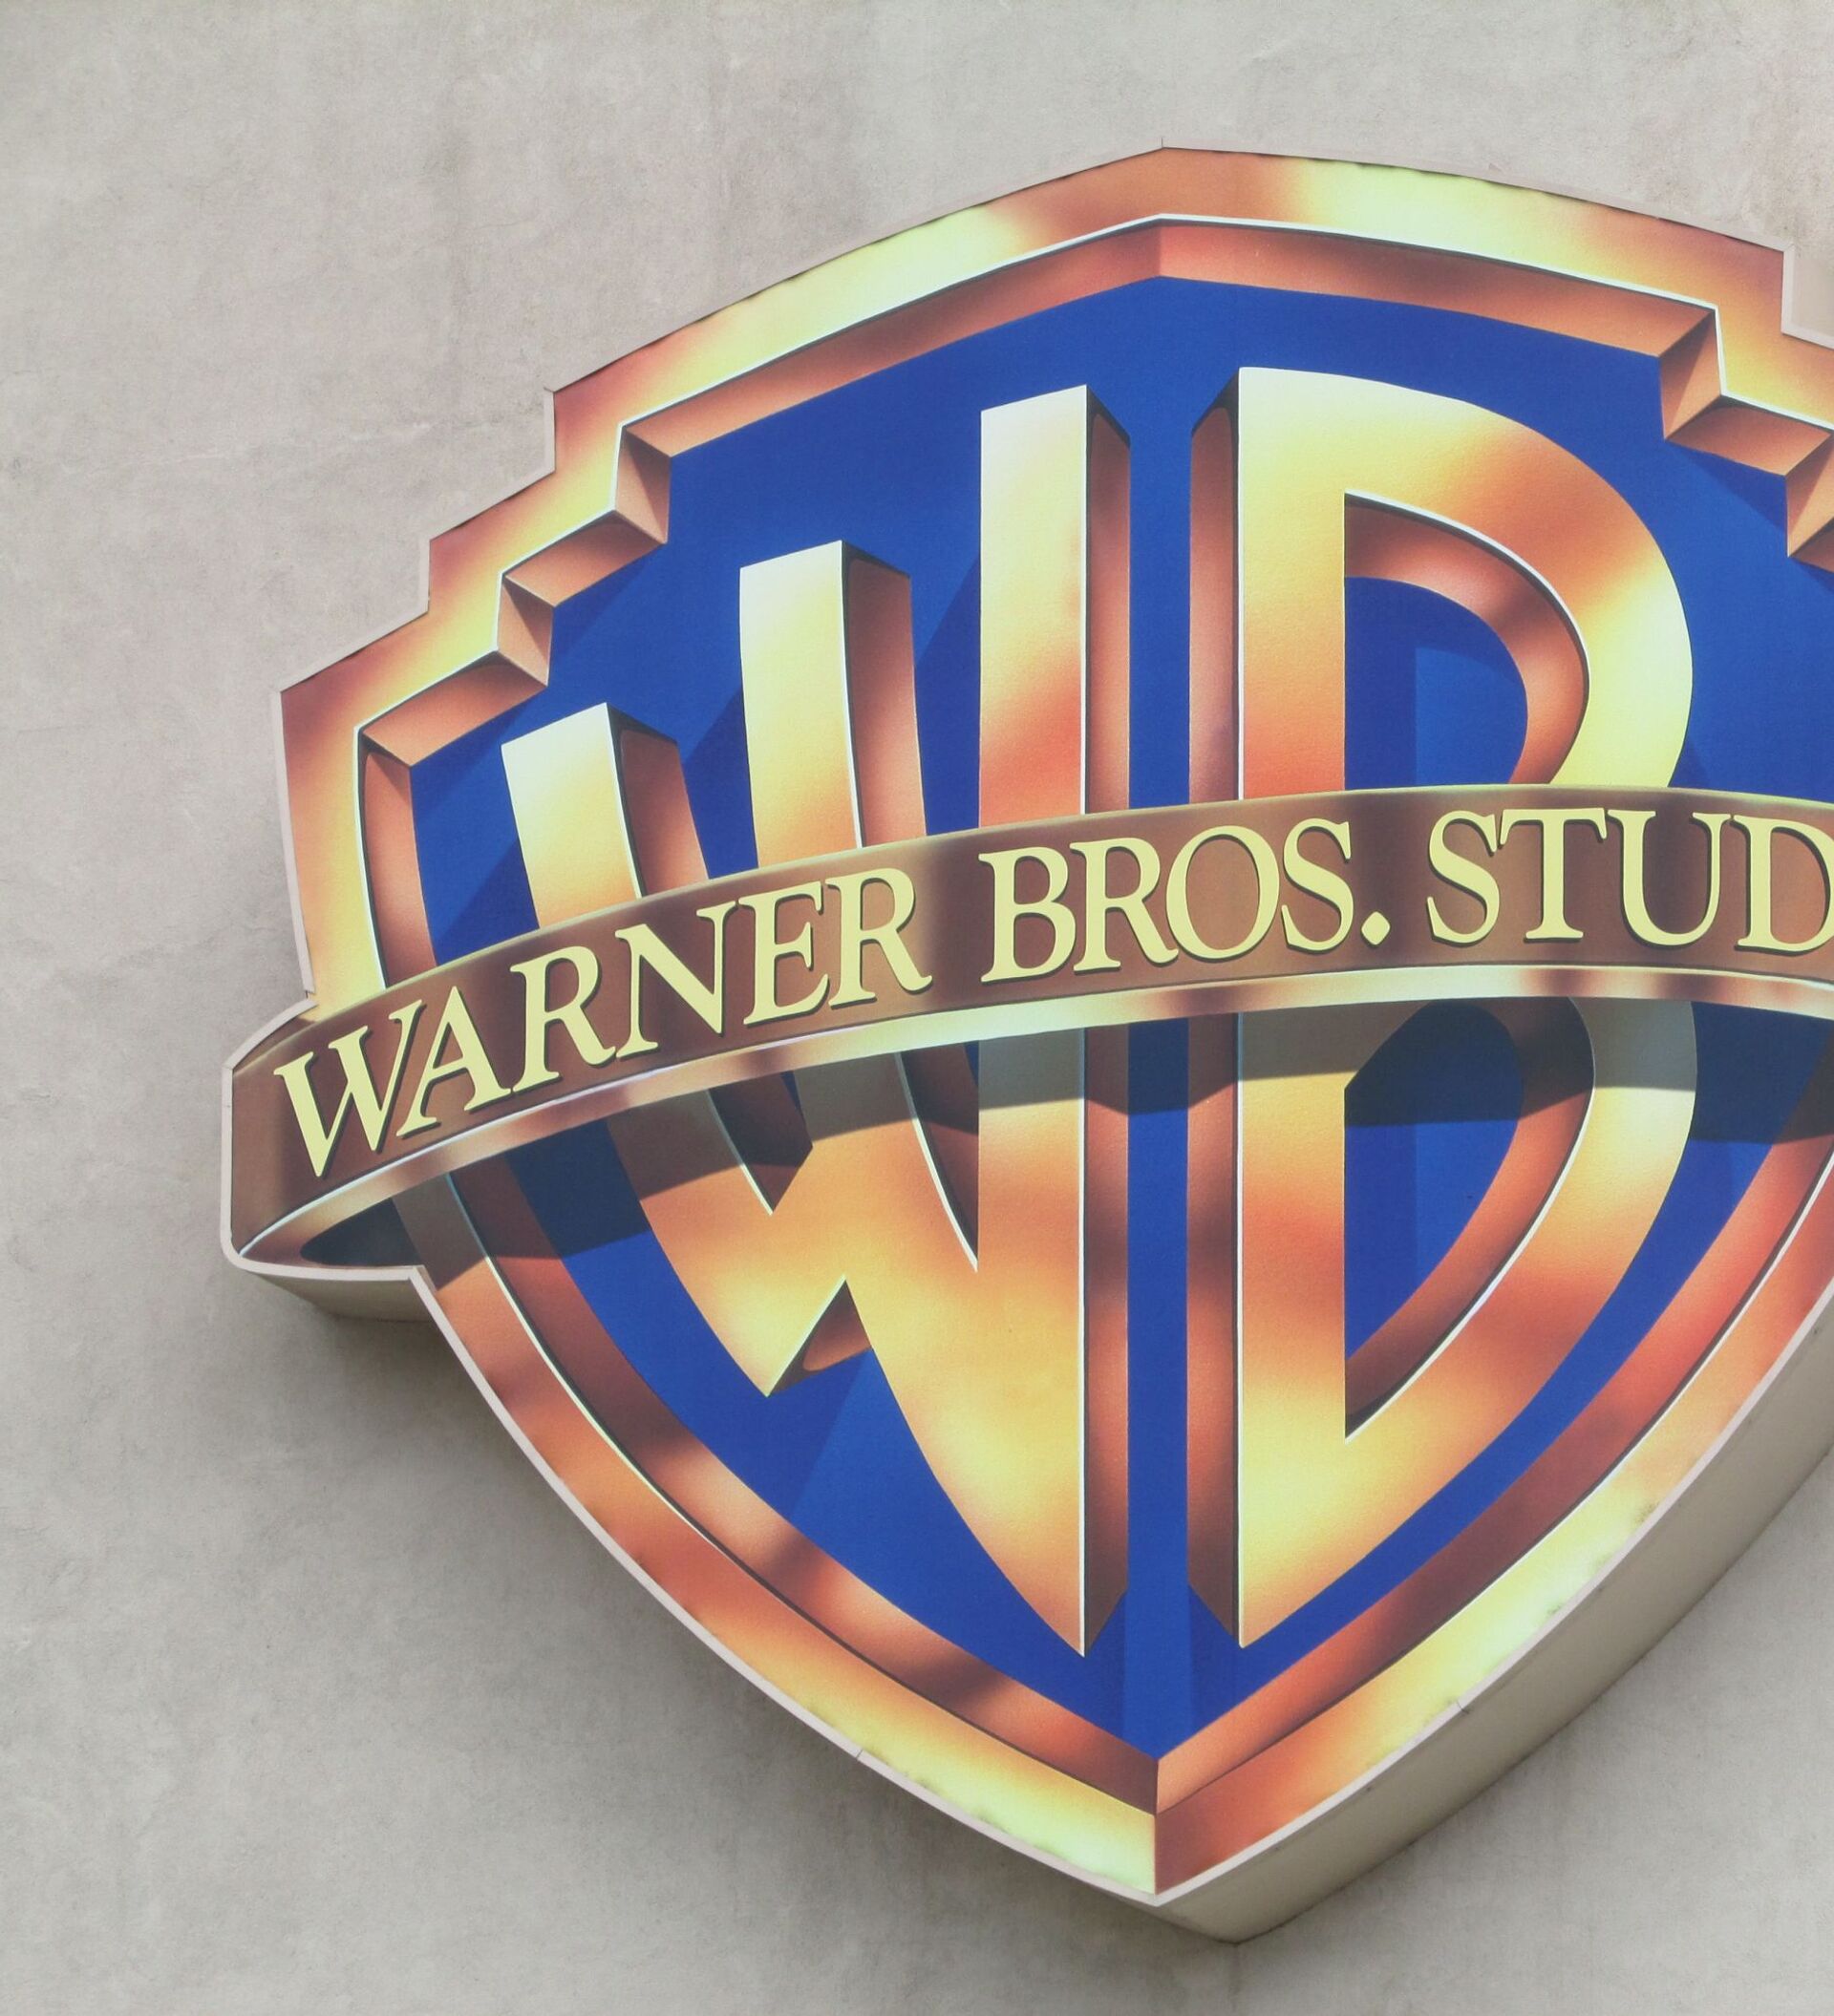 Варнер фф. Ворнер БРОС братья. Кинокомпания Уорнер БРОС. Логотип киностудии Warner Bros. Логотип ворнер БРОС.